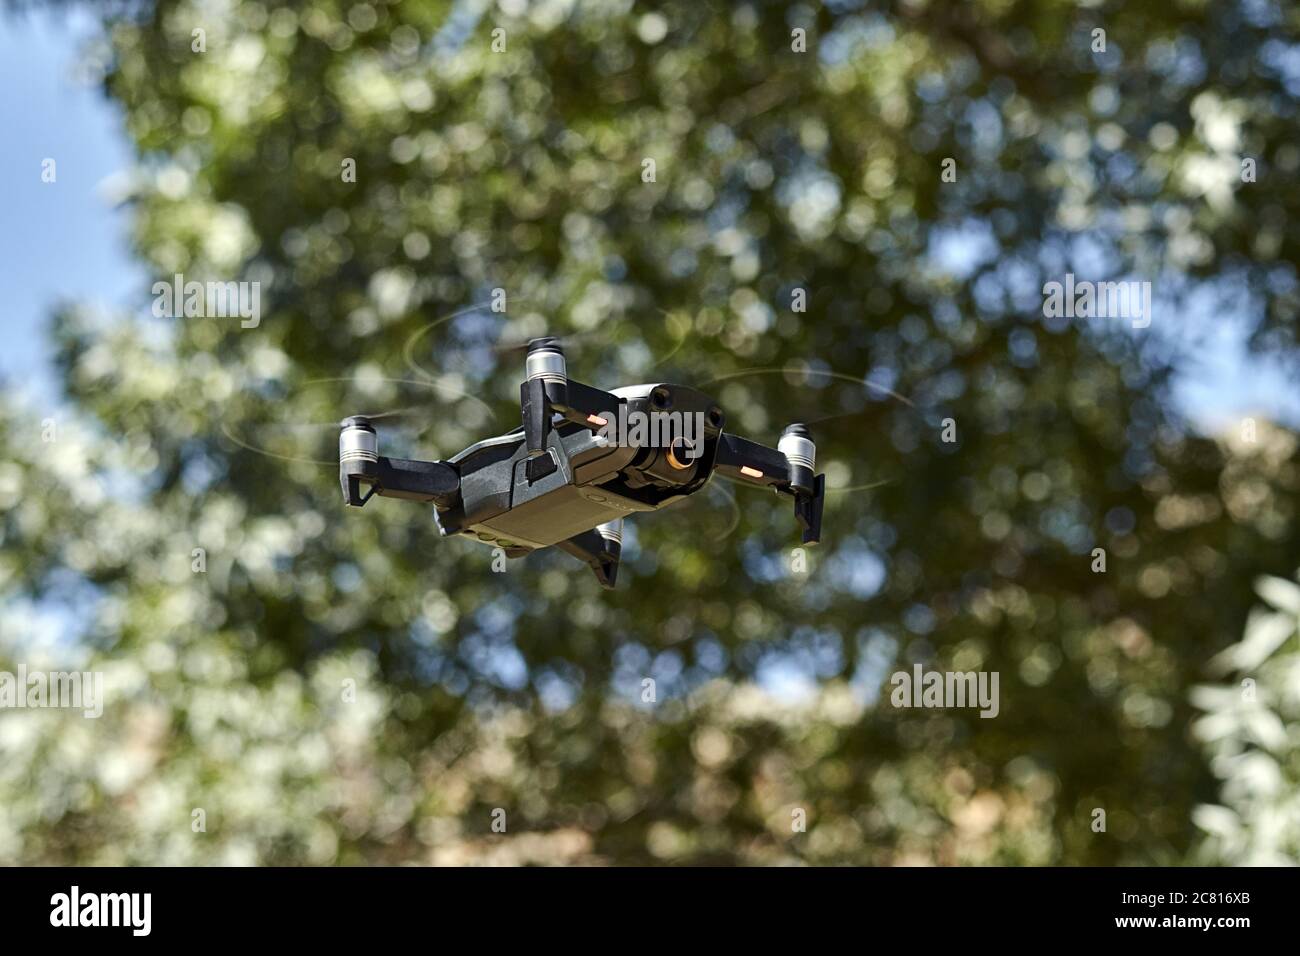 Dron,vehículo aéreo no tripulado Stock Photo